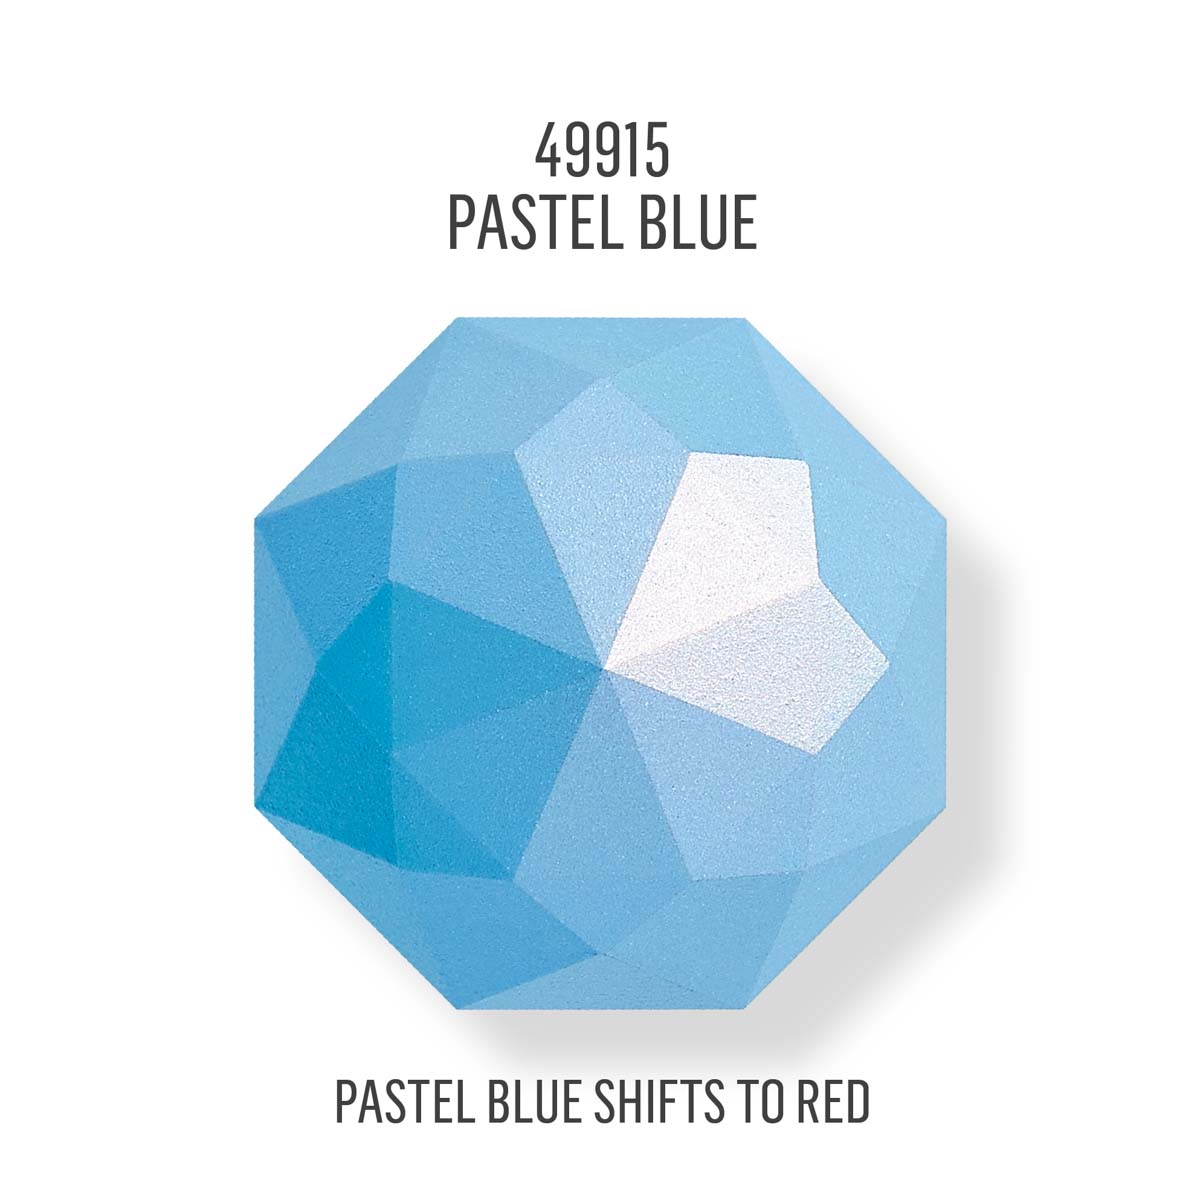 FolkArt ® Color Shift™ Acrylic Paint - Pastel Blue, 4 oz. - 49915